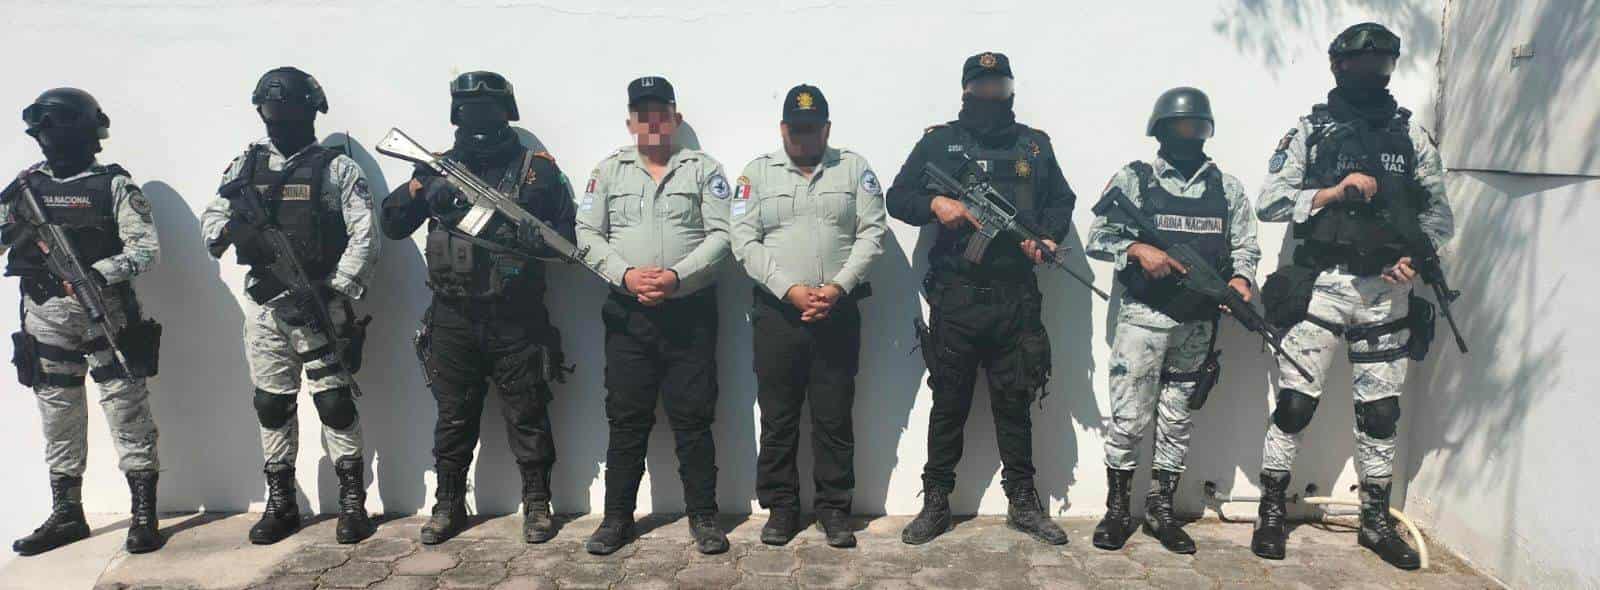 En un trabajo de conjunto entre autoridades de los Gobiernos Federal y del estado de Nuevo León, fueron detenidos dos civiles quienes portaban ropa semejante al uniforme de proximidad de la Guardia Nacional, en el municipio de Galeana.